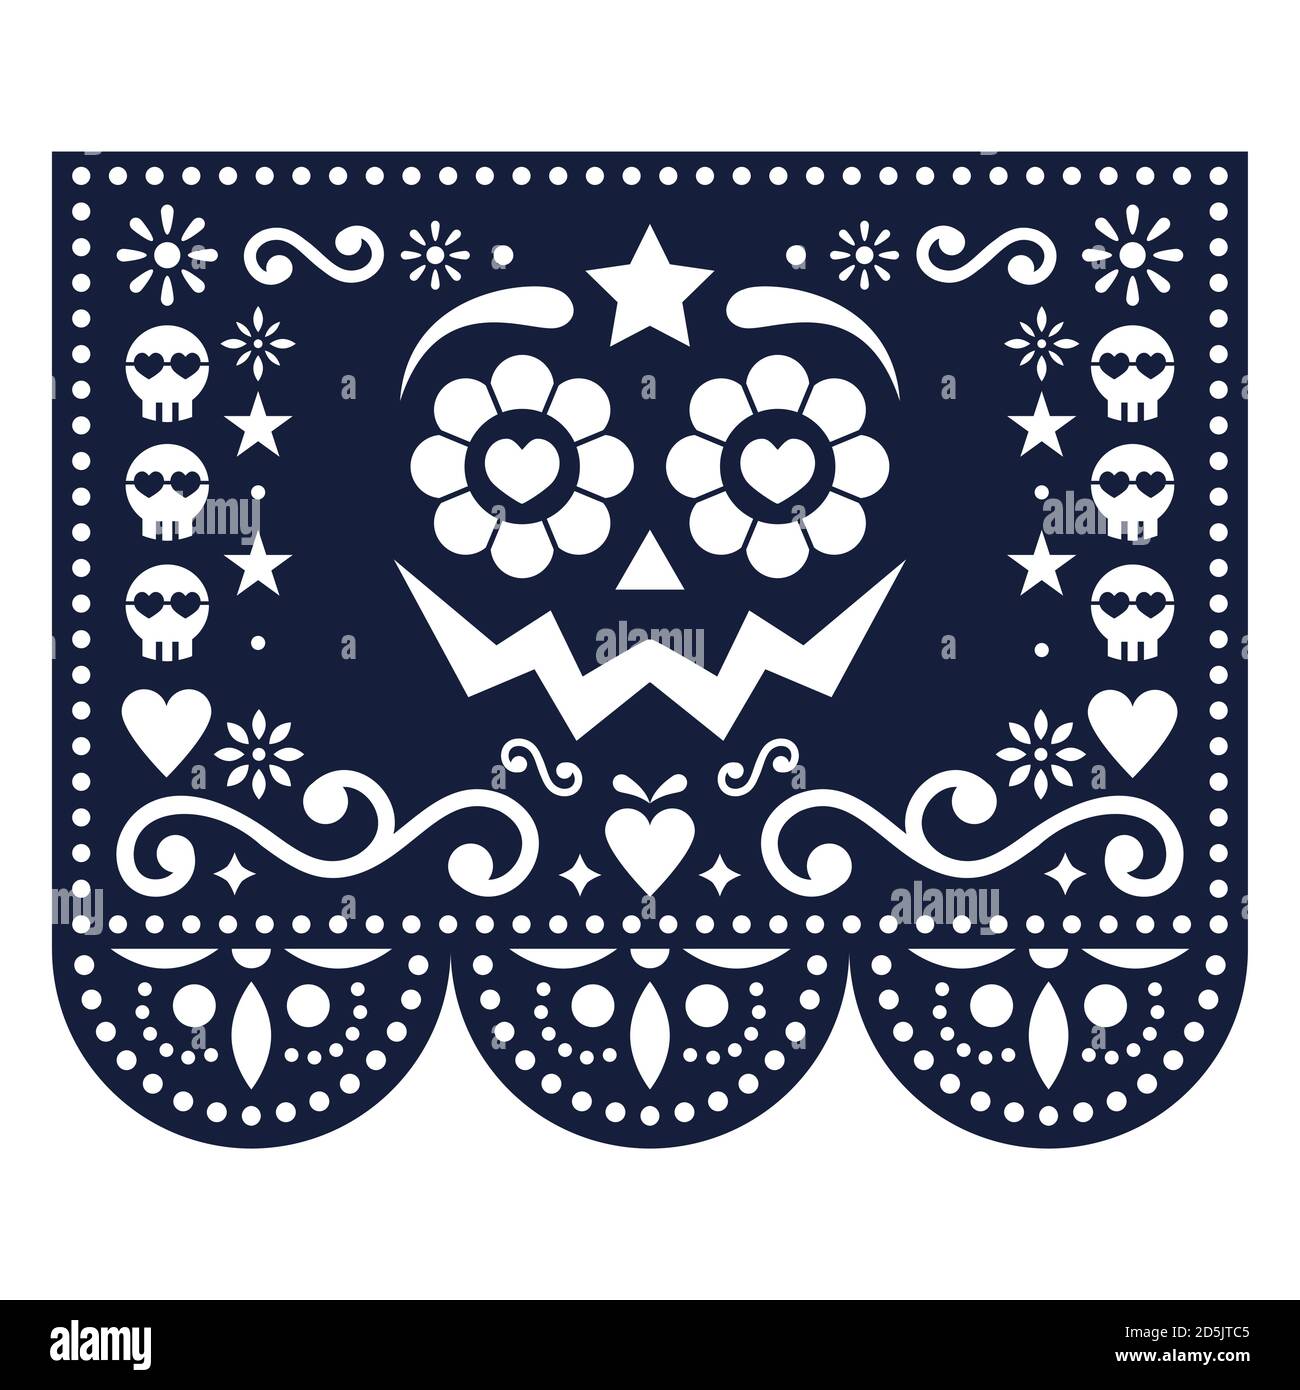 Halloween und Tag der Toten Papel Picado Vektor-Design mit Kürbis Gesicht, mexikanische Papier ausgeschnitten Muster - Dia de Los Muertos Feier Stock Vektor